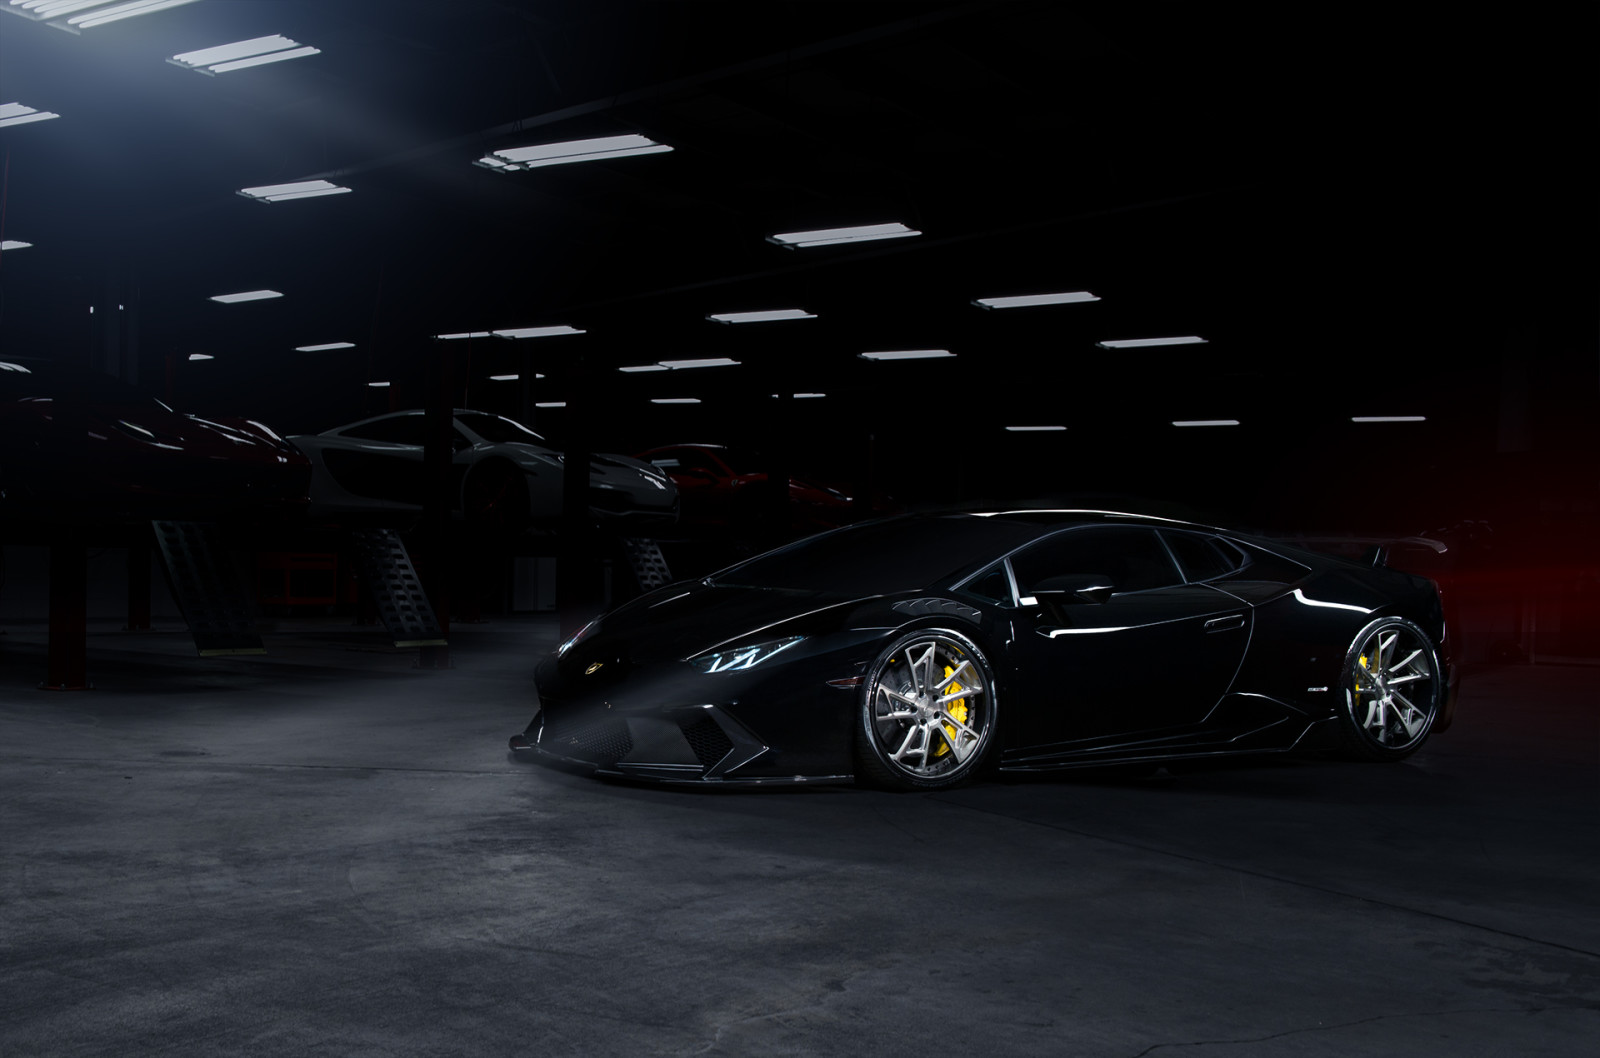 hitam, Lamborghini, supercar, warna, gelap, Huracan, Depan, roda